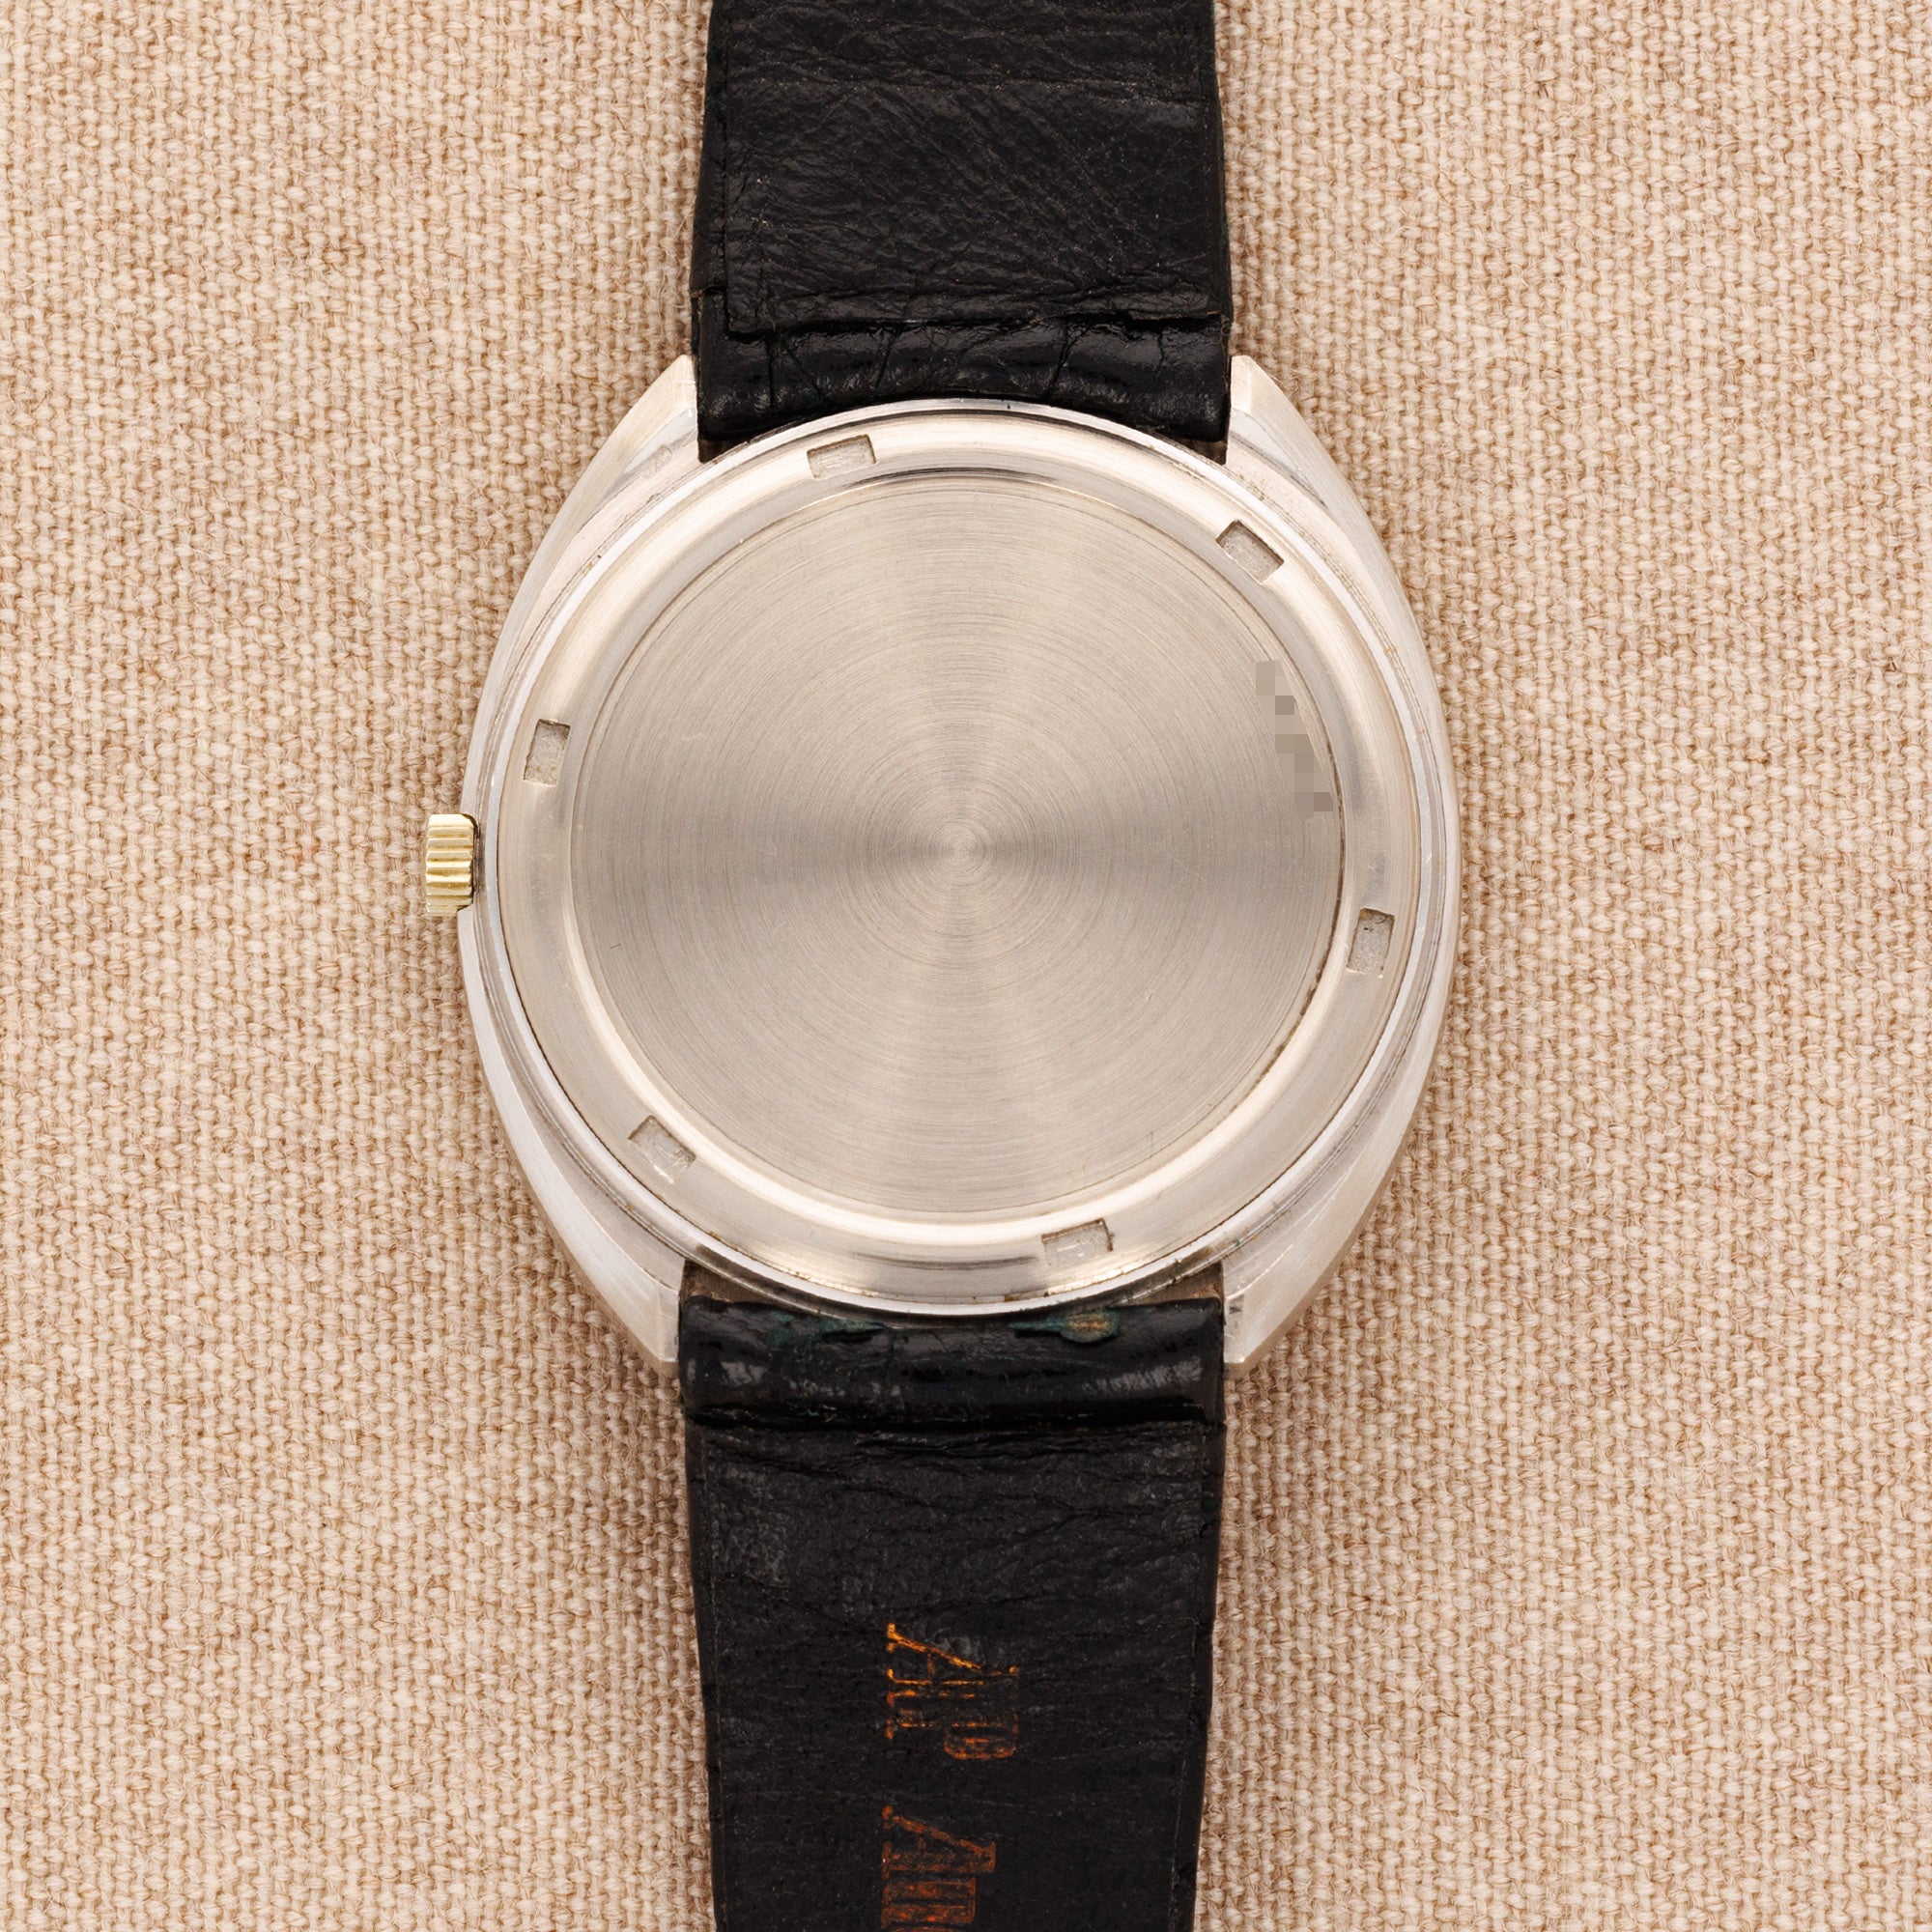 Audemars Piguet - Audemars Piguet White Gold Automatic Tonneau Watch - The Keystone Watches